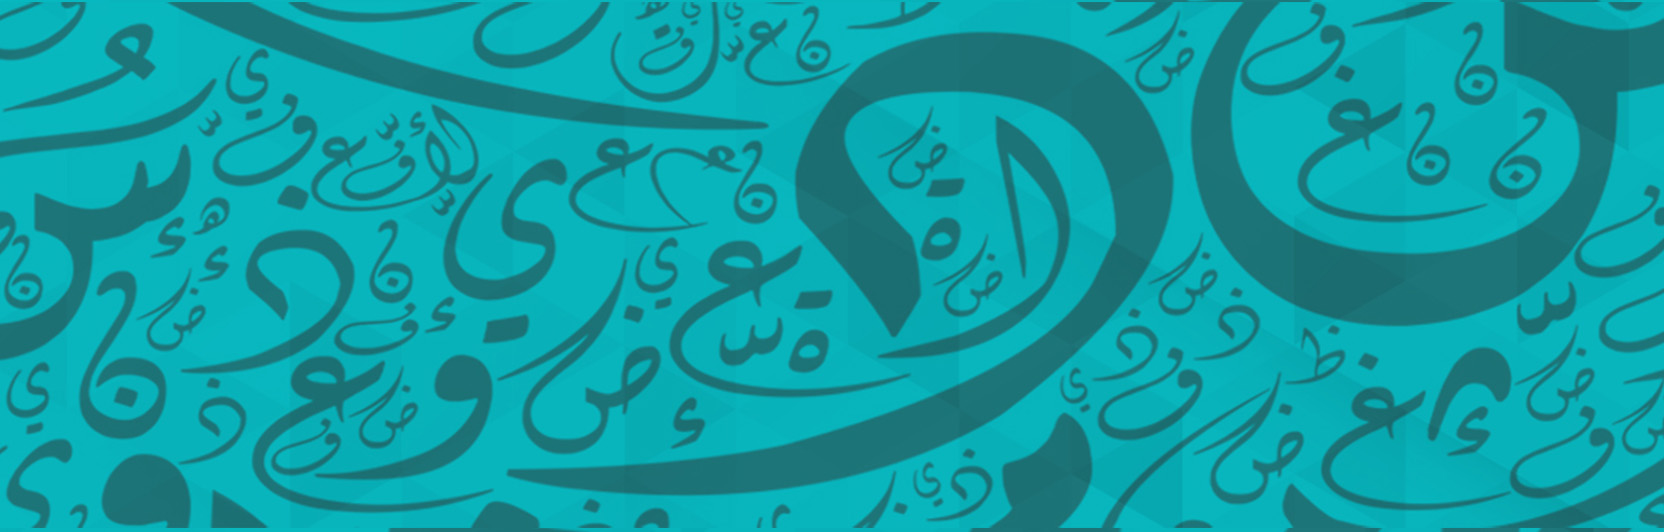 المراجعة النهائية | لغة عربية تانية ثانوي - الترم الثاني | ا. محمد رجب